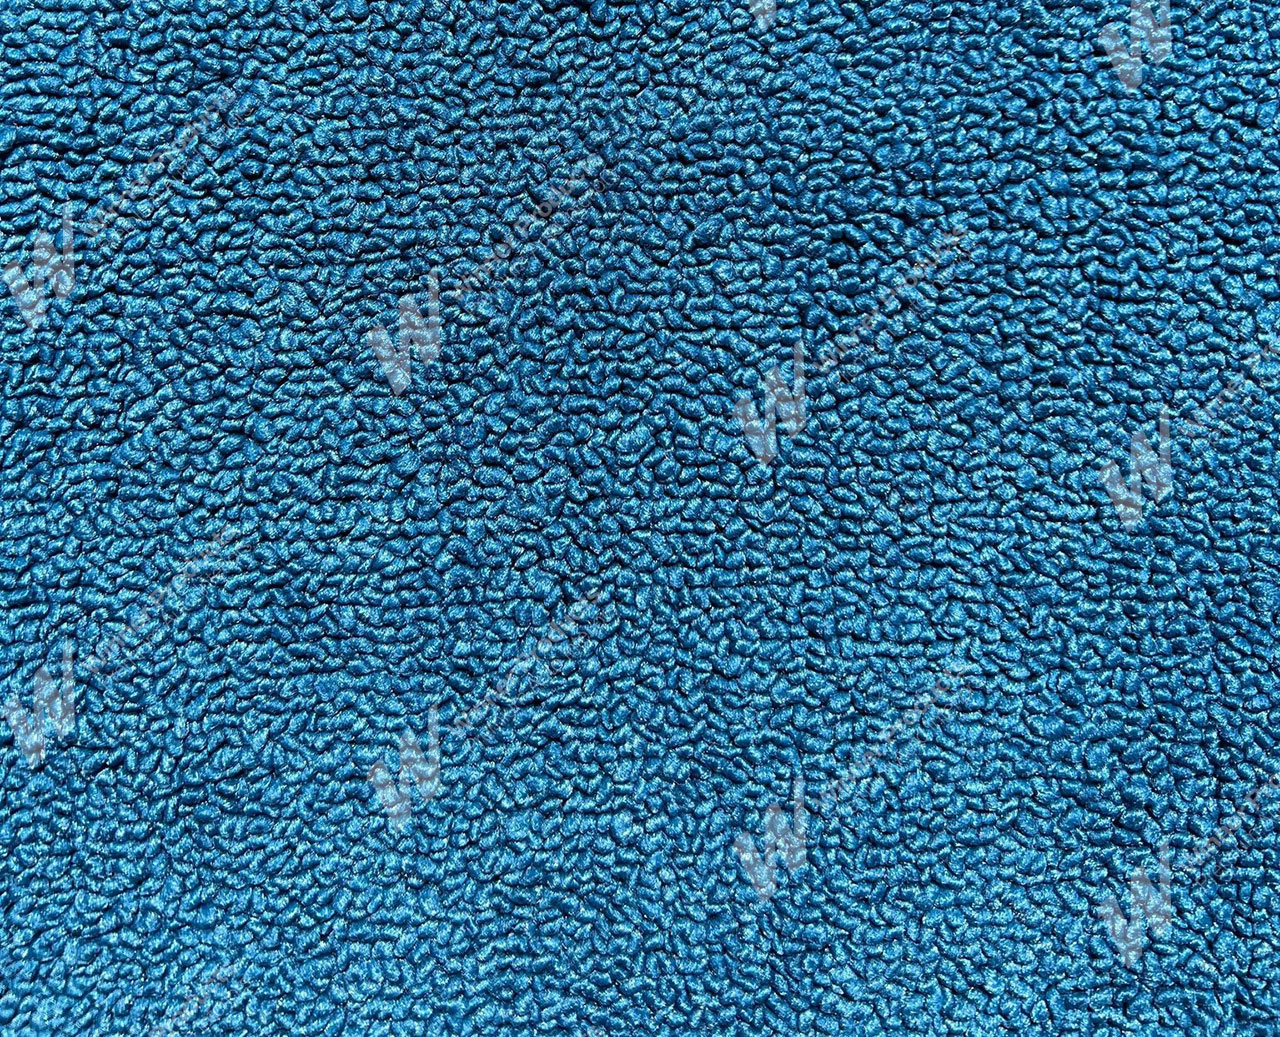 Holden Premier HT Premier Sedan 14T Twilight Blue & Castillion Weave Carpet (Image 1 of 1)